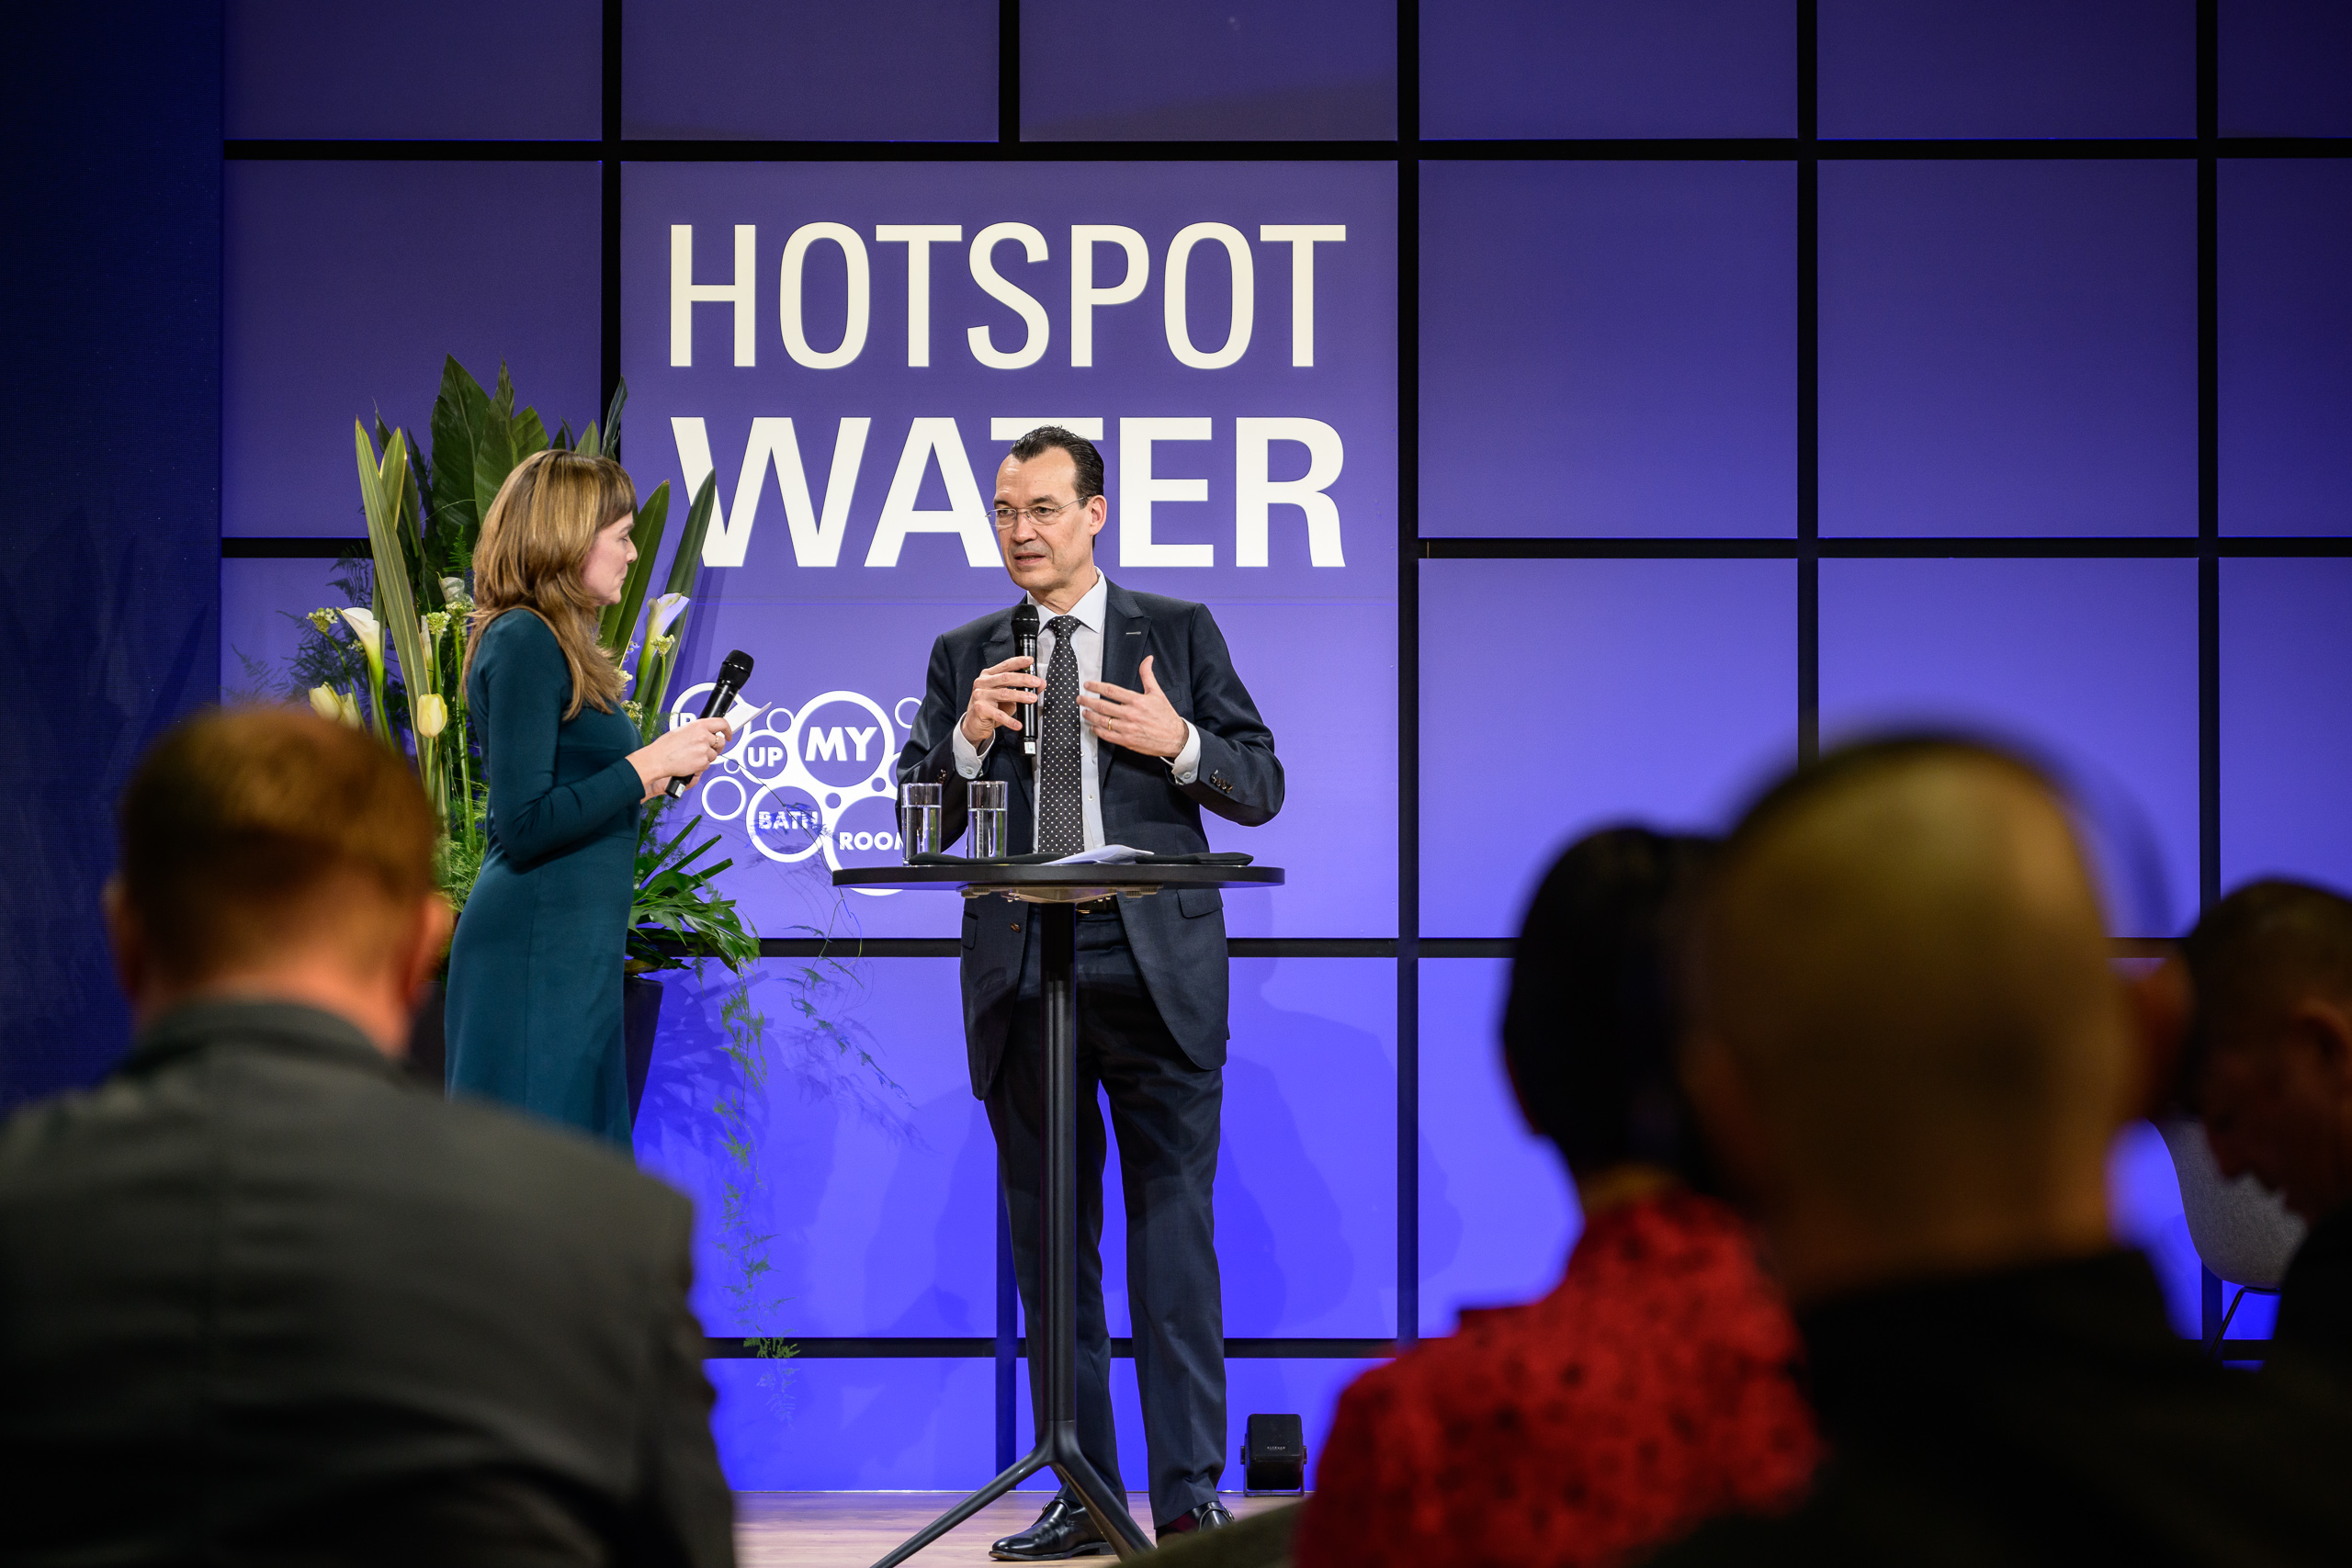 Vortrag beim Hotspot Water